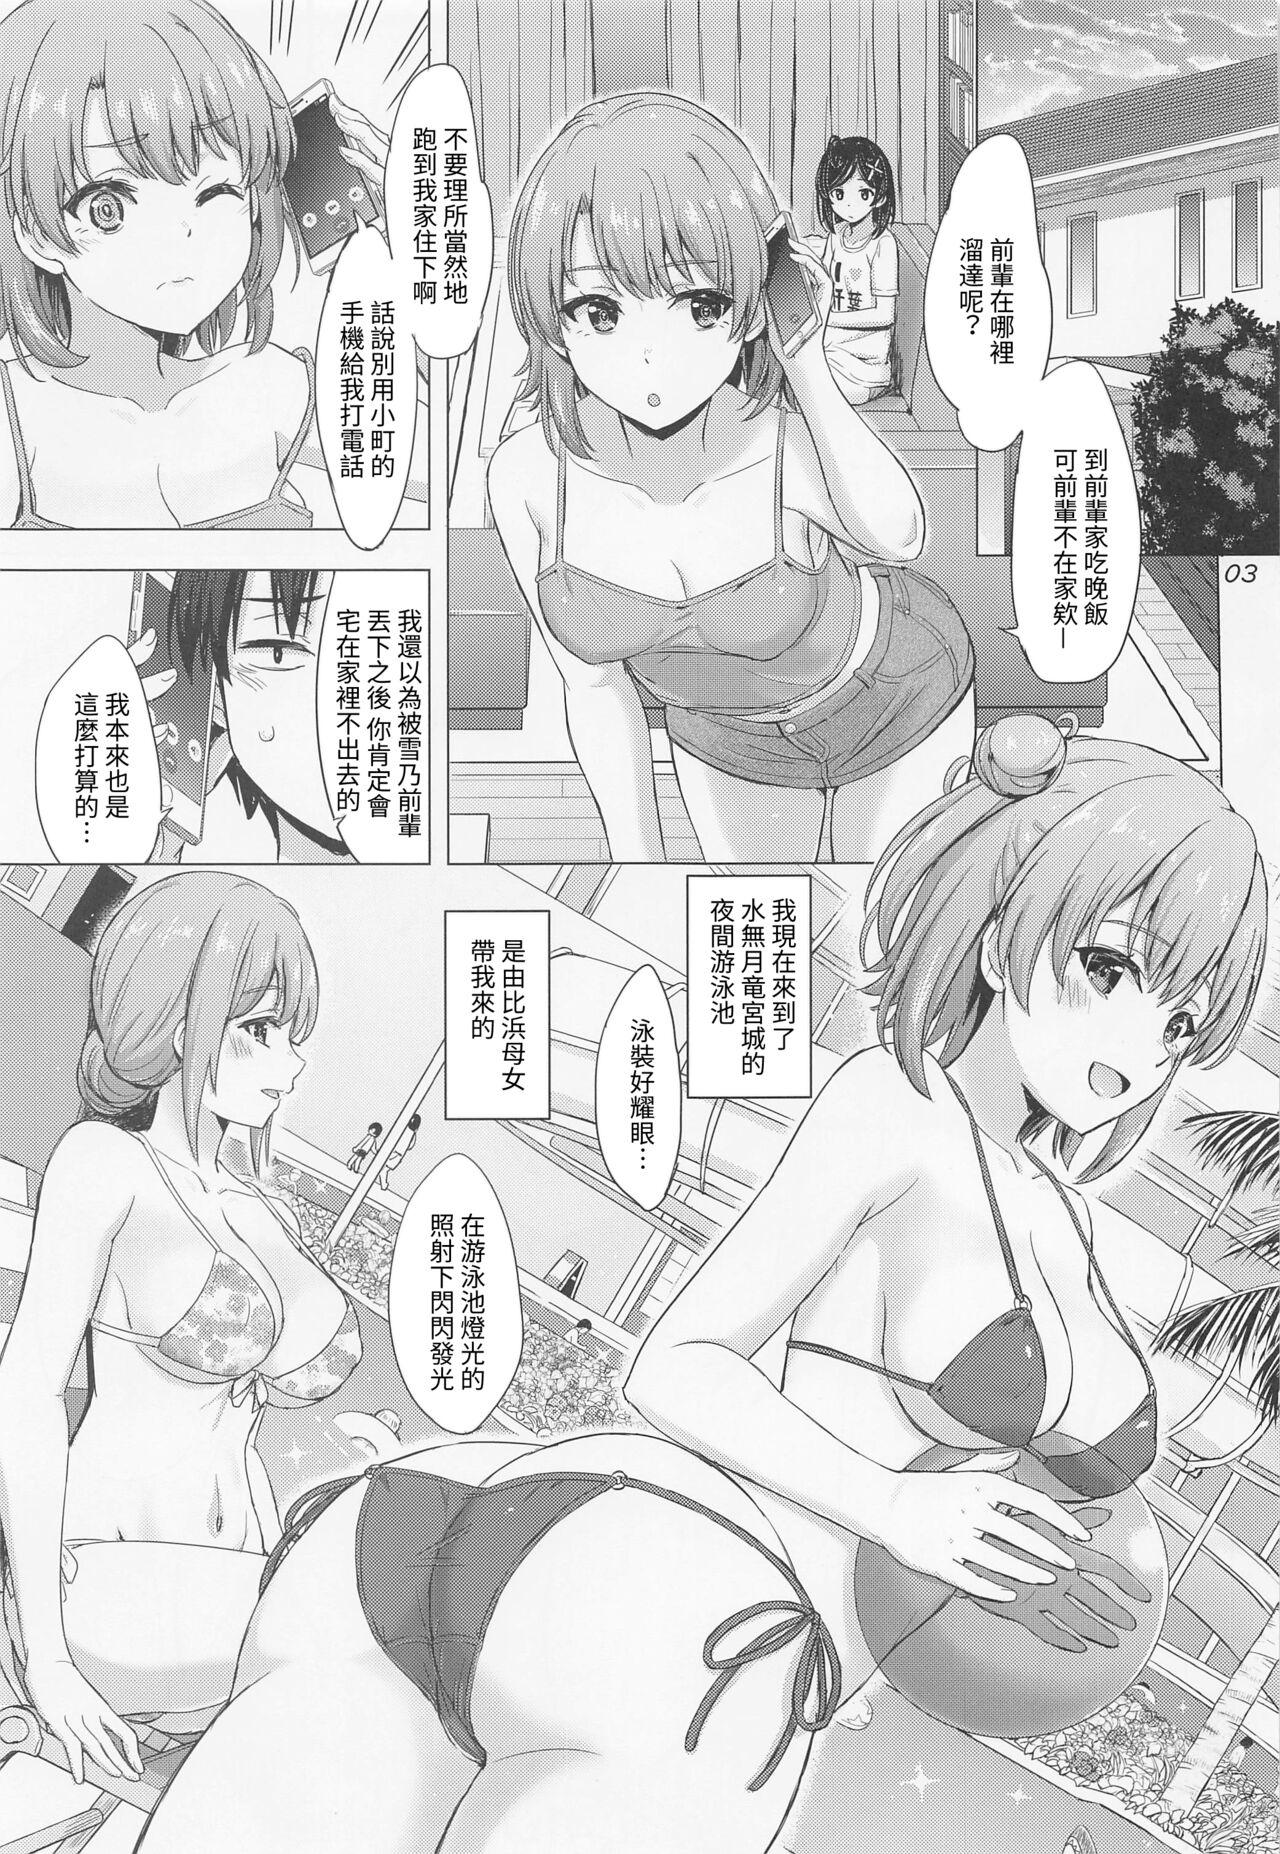 Women Sucking Dicks Jounetsuteki na Natsu no Resort o Yuigahama Oyako to. - Yahari ore no seishun love come wa machigatteiru Flaquita - Page 2